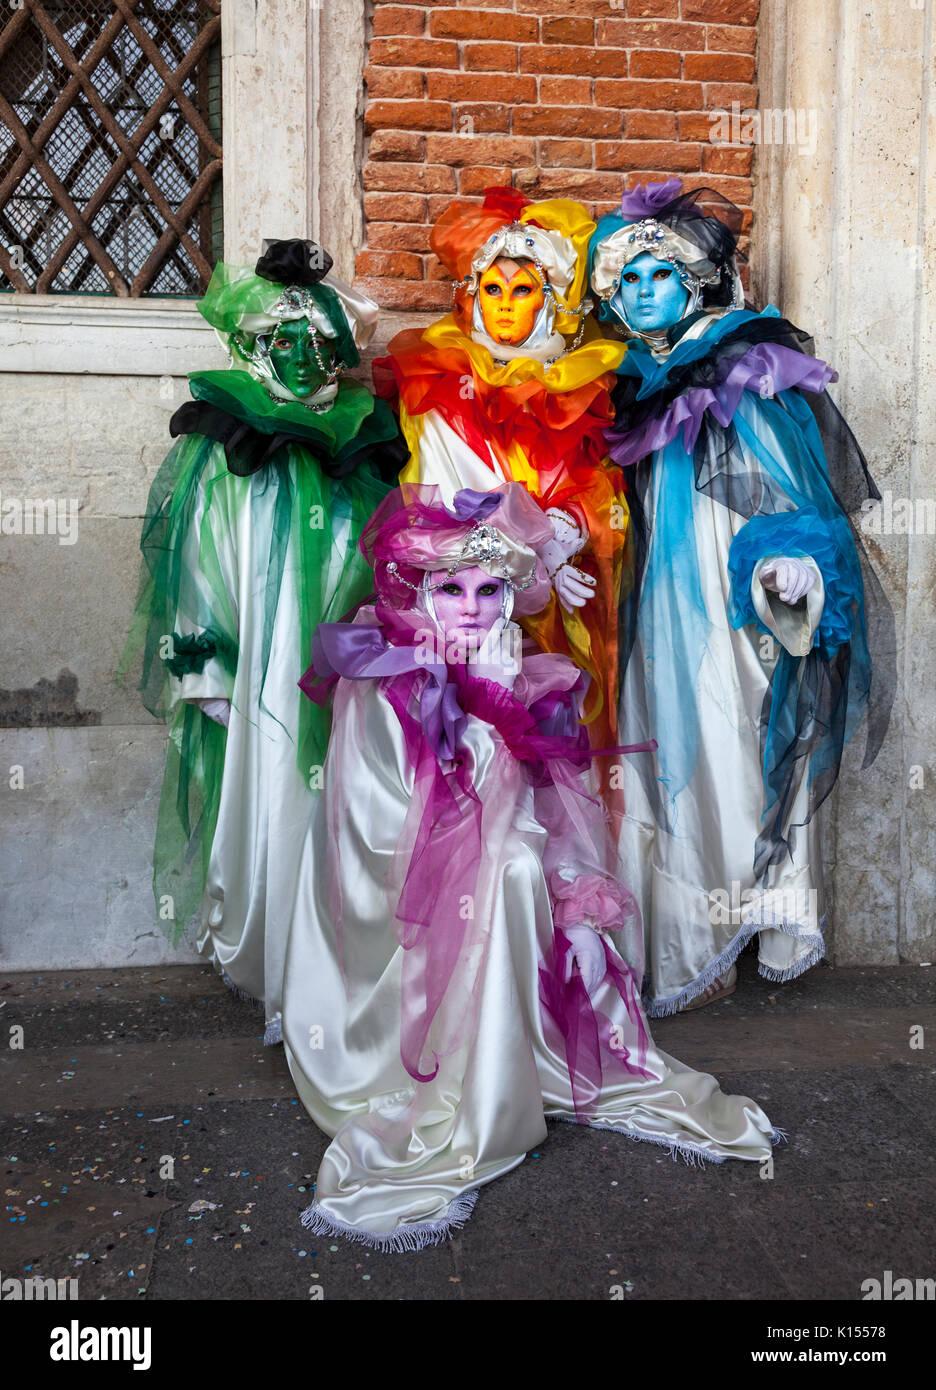 Venedig, Italien - 18. Februar 2012: Gruppe von vier verschleierte Menschen vor einer Wand von der Piazza San Marco während der Karneval von Venedig das Posieren. Stockfoto